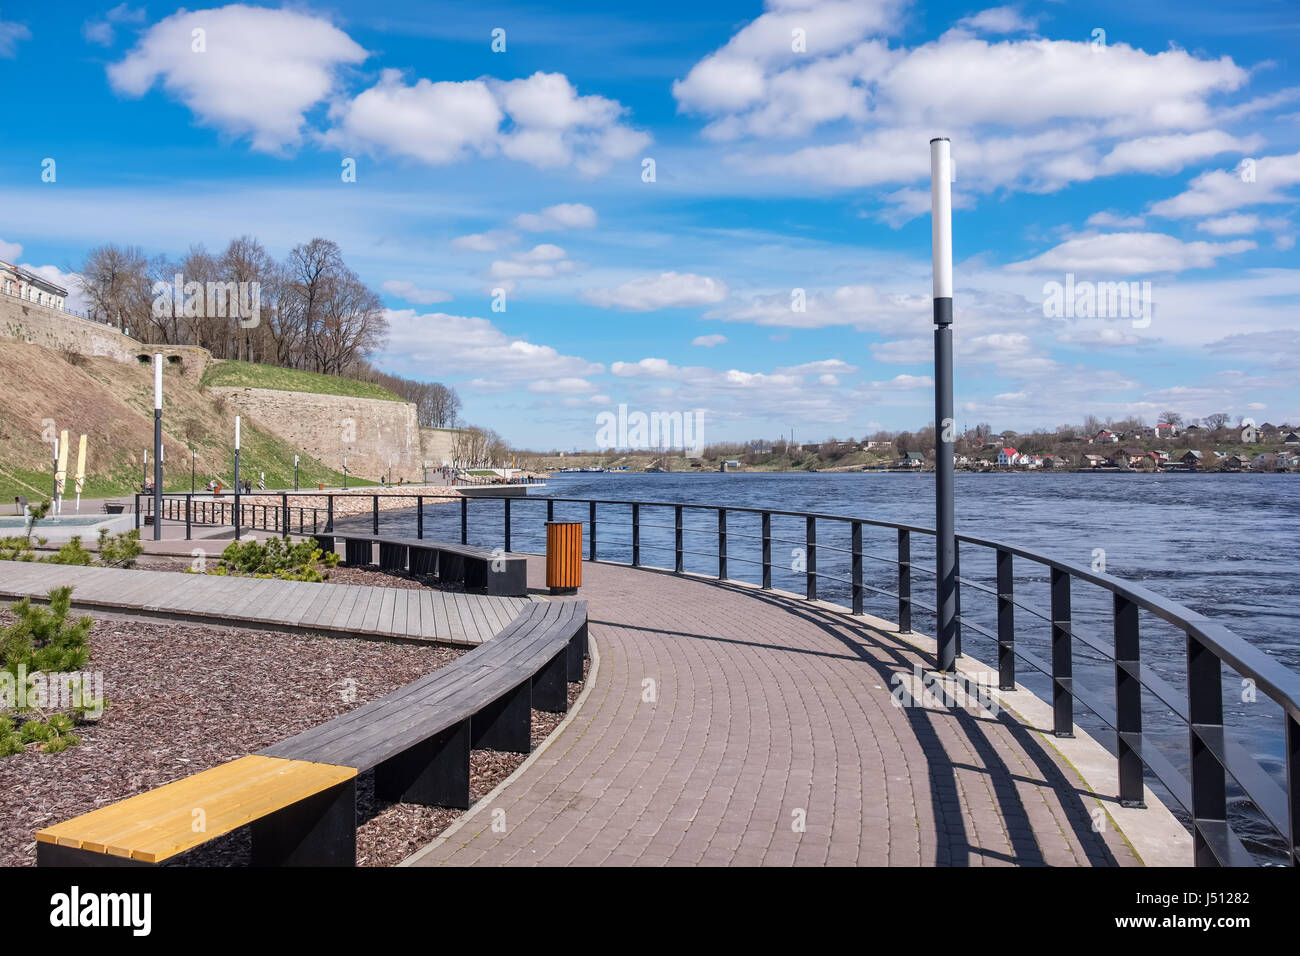 Quay le long de la rivière dans la ville de Narva. L'Estonie, de l'Europe. Ville russe Ivangorod à la distance Banque D'Images